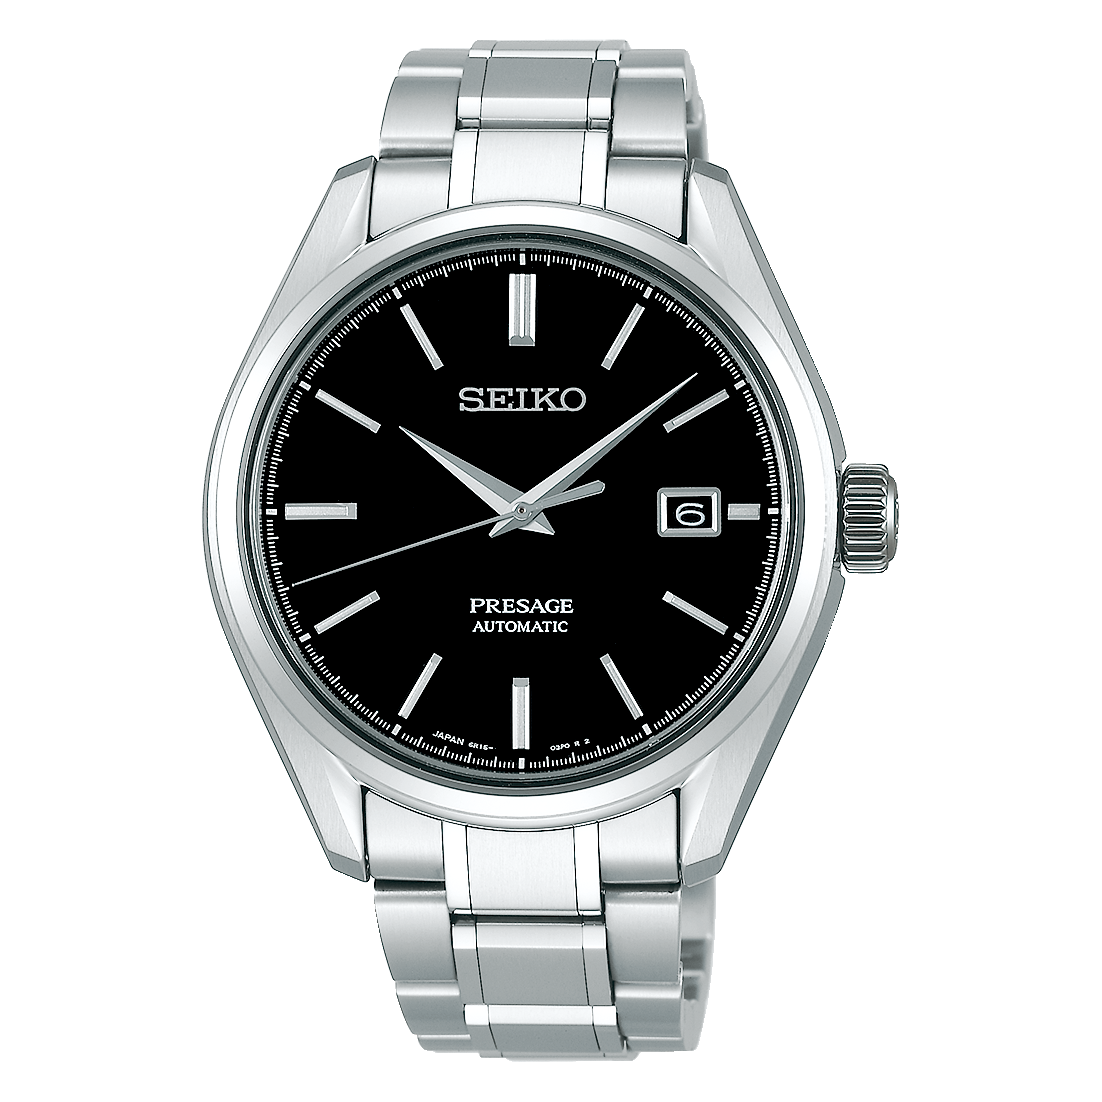 SEIKO SARY057 プレザージュ 4R36-03H0 セイコー 腕時計 通信販売